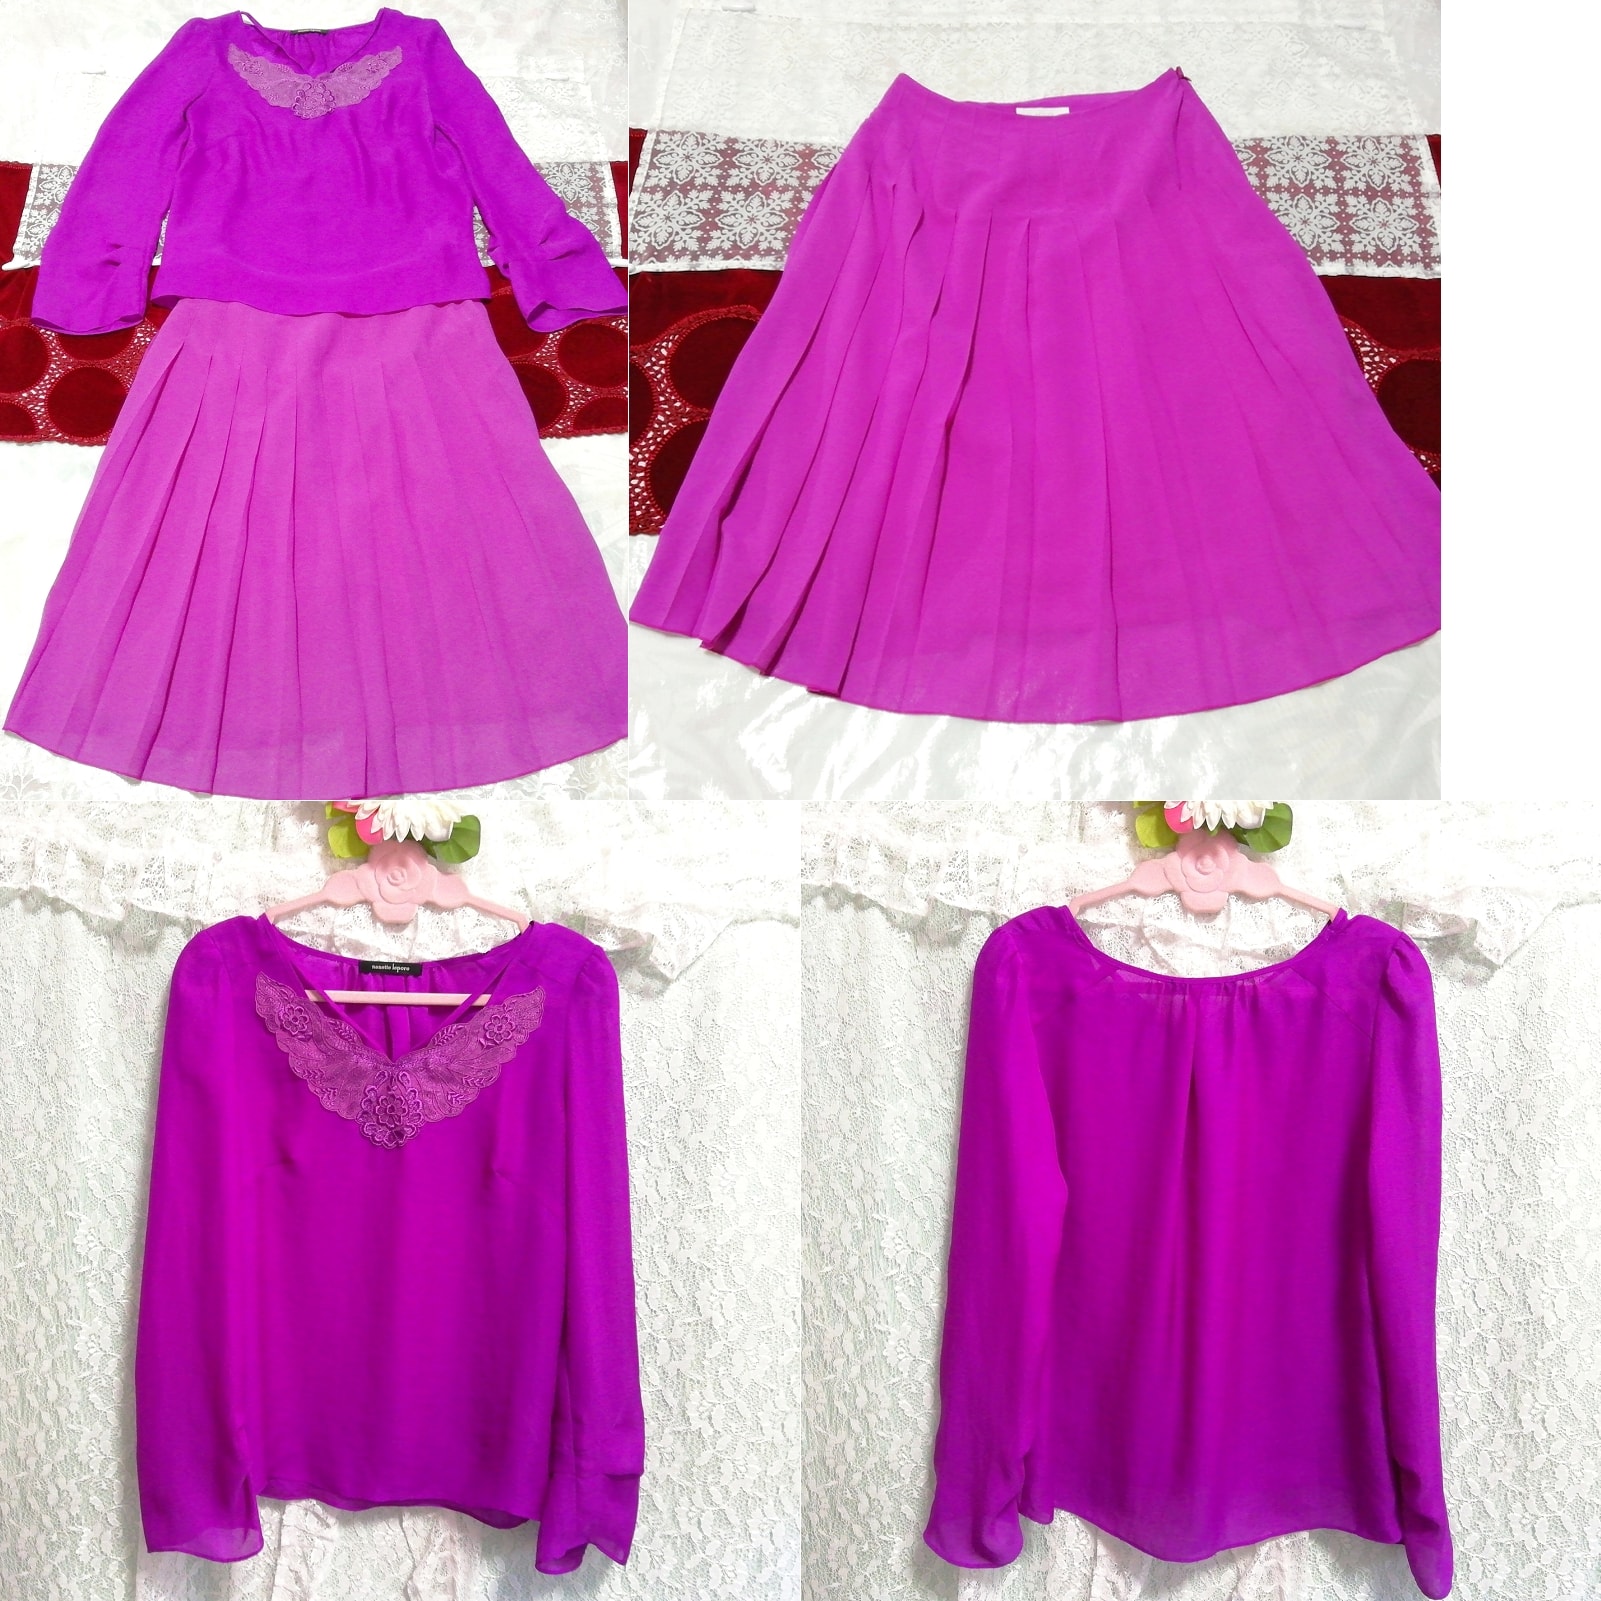 Purple chiffon tunic negligee nightgown nightwear chiffon skirt 2P, fashion, ladies' fashion, nightwear, pajamas